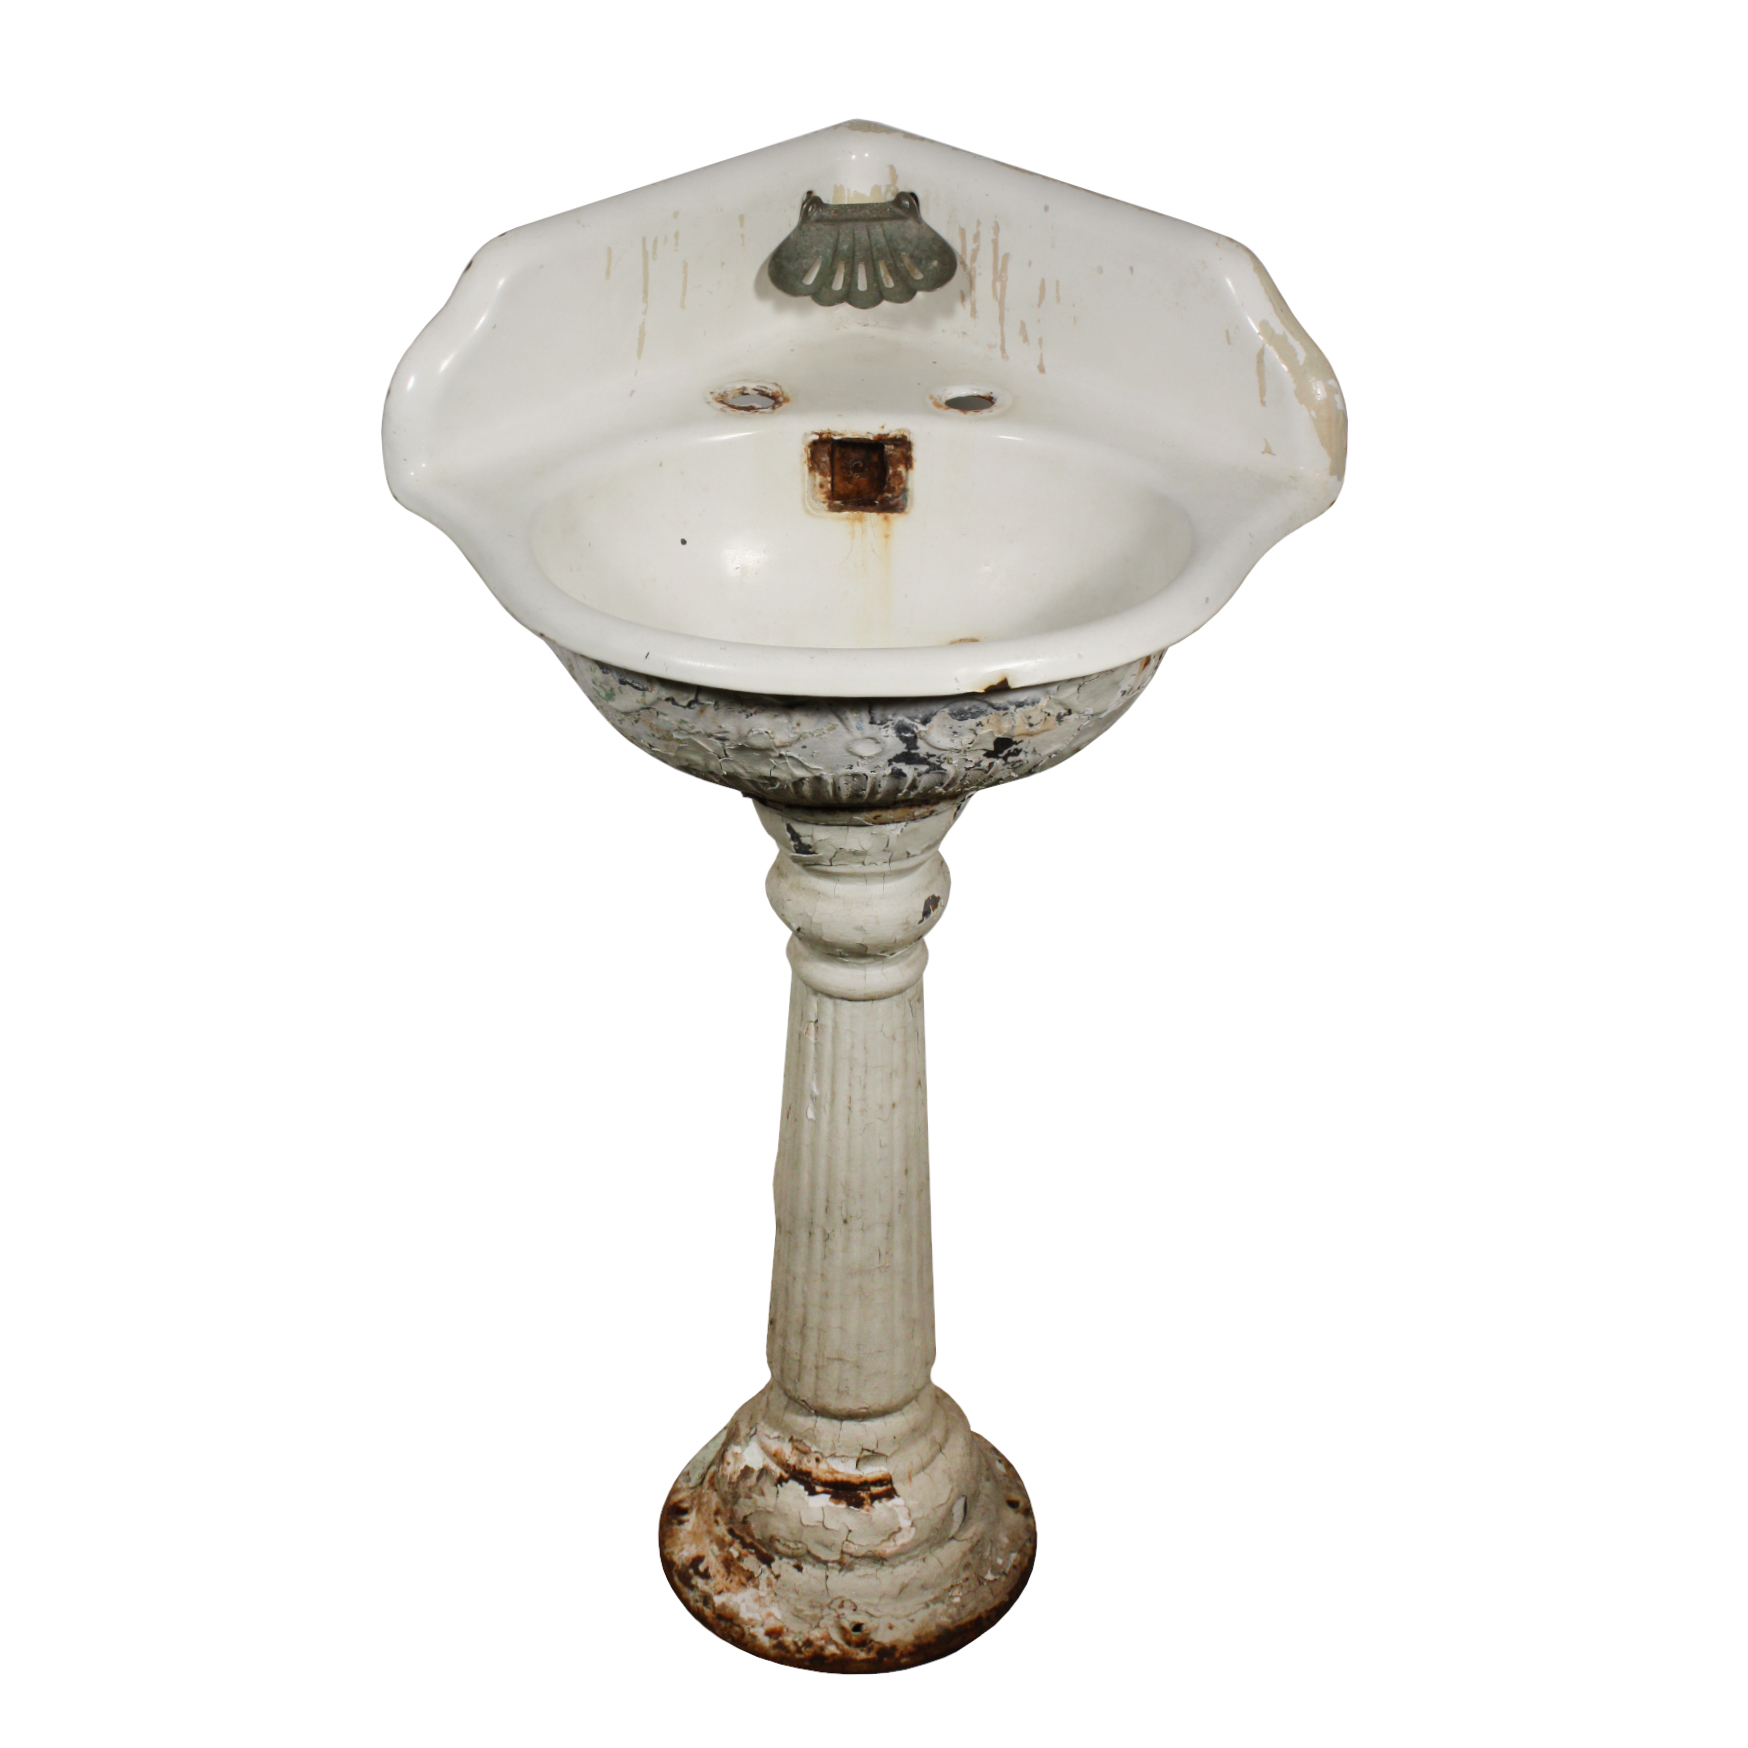 SOLD Lovely Antique Porcelain Corner Pedestal Sink, c.1910 -0